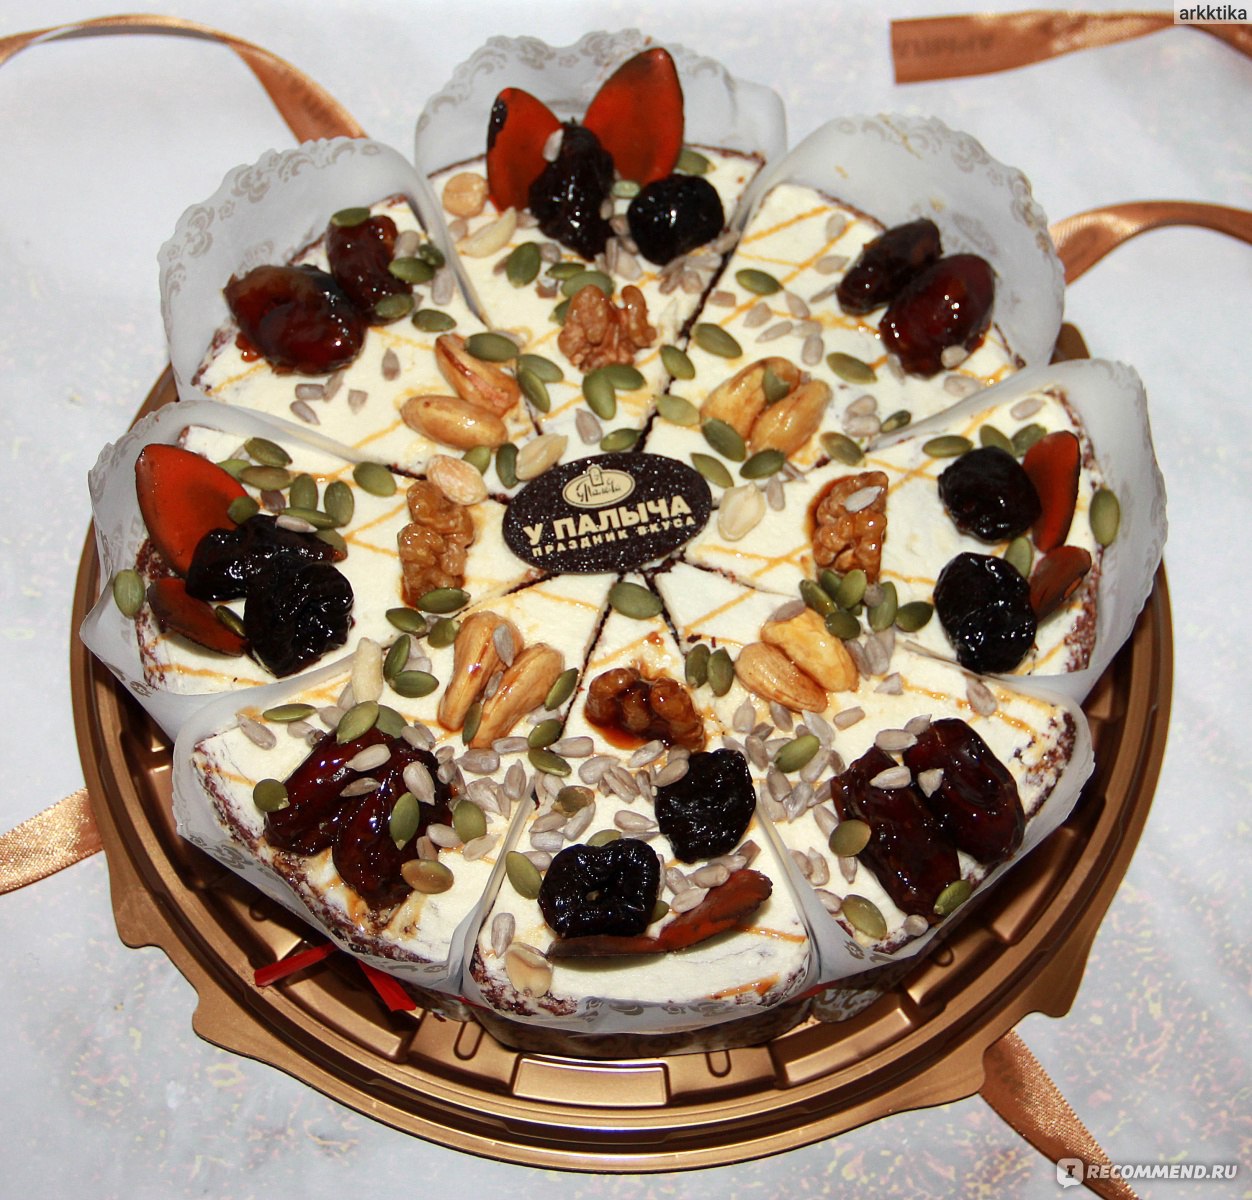 Торт от «Палыча» «Ореховый по-королевски»: цена десерта, пошаговый рецепт